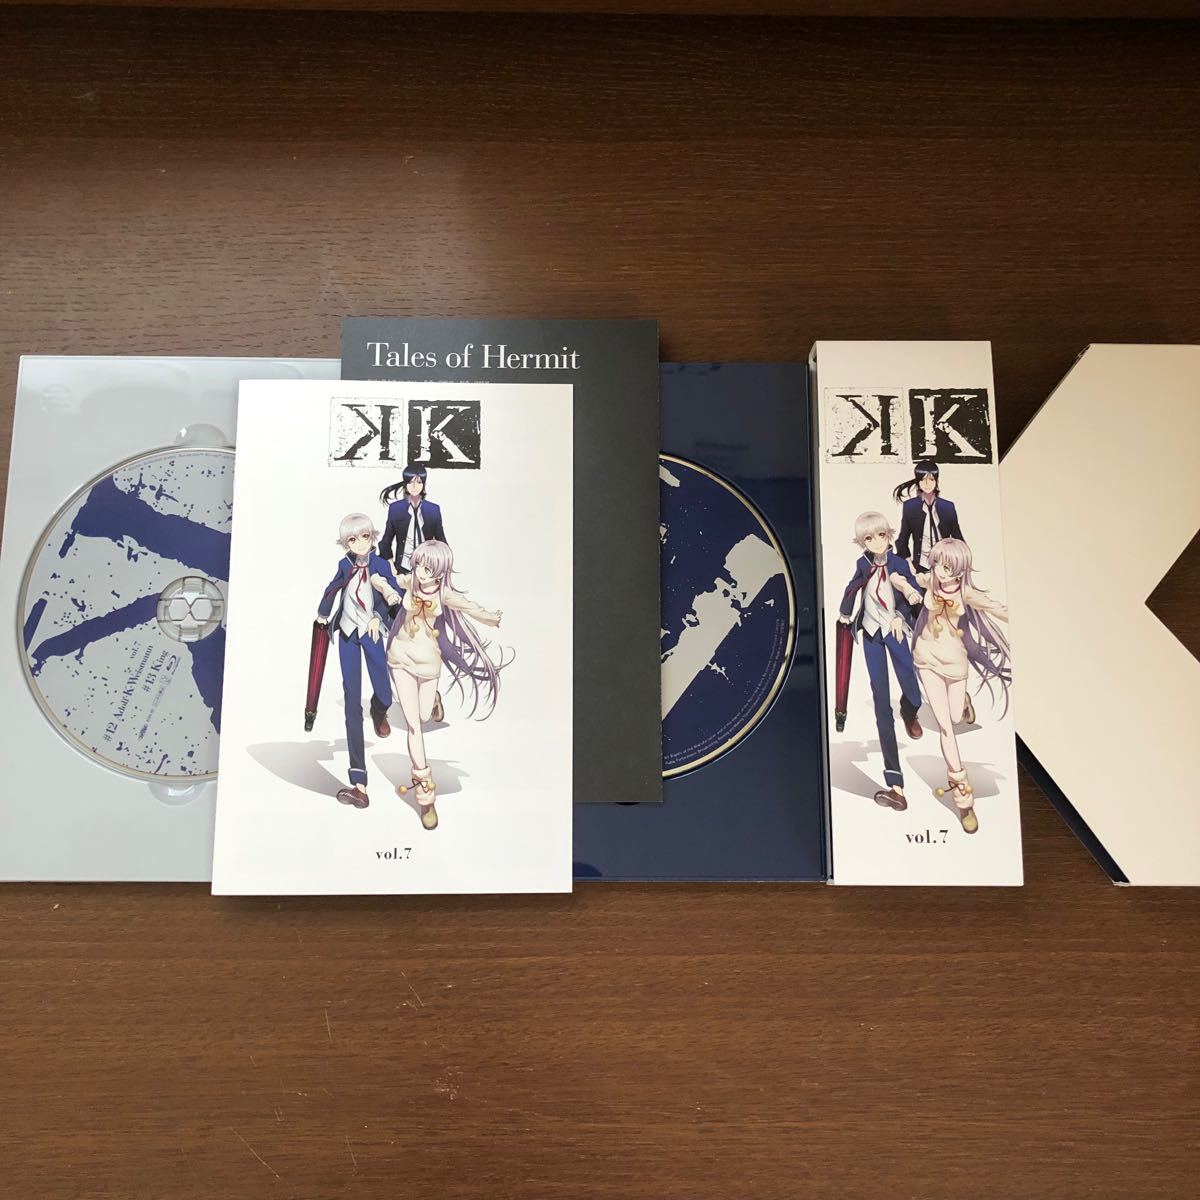 【期間限定版】K vol.1〜7 全巻収納ボックス付きBlu-ray